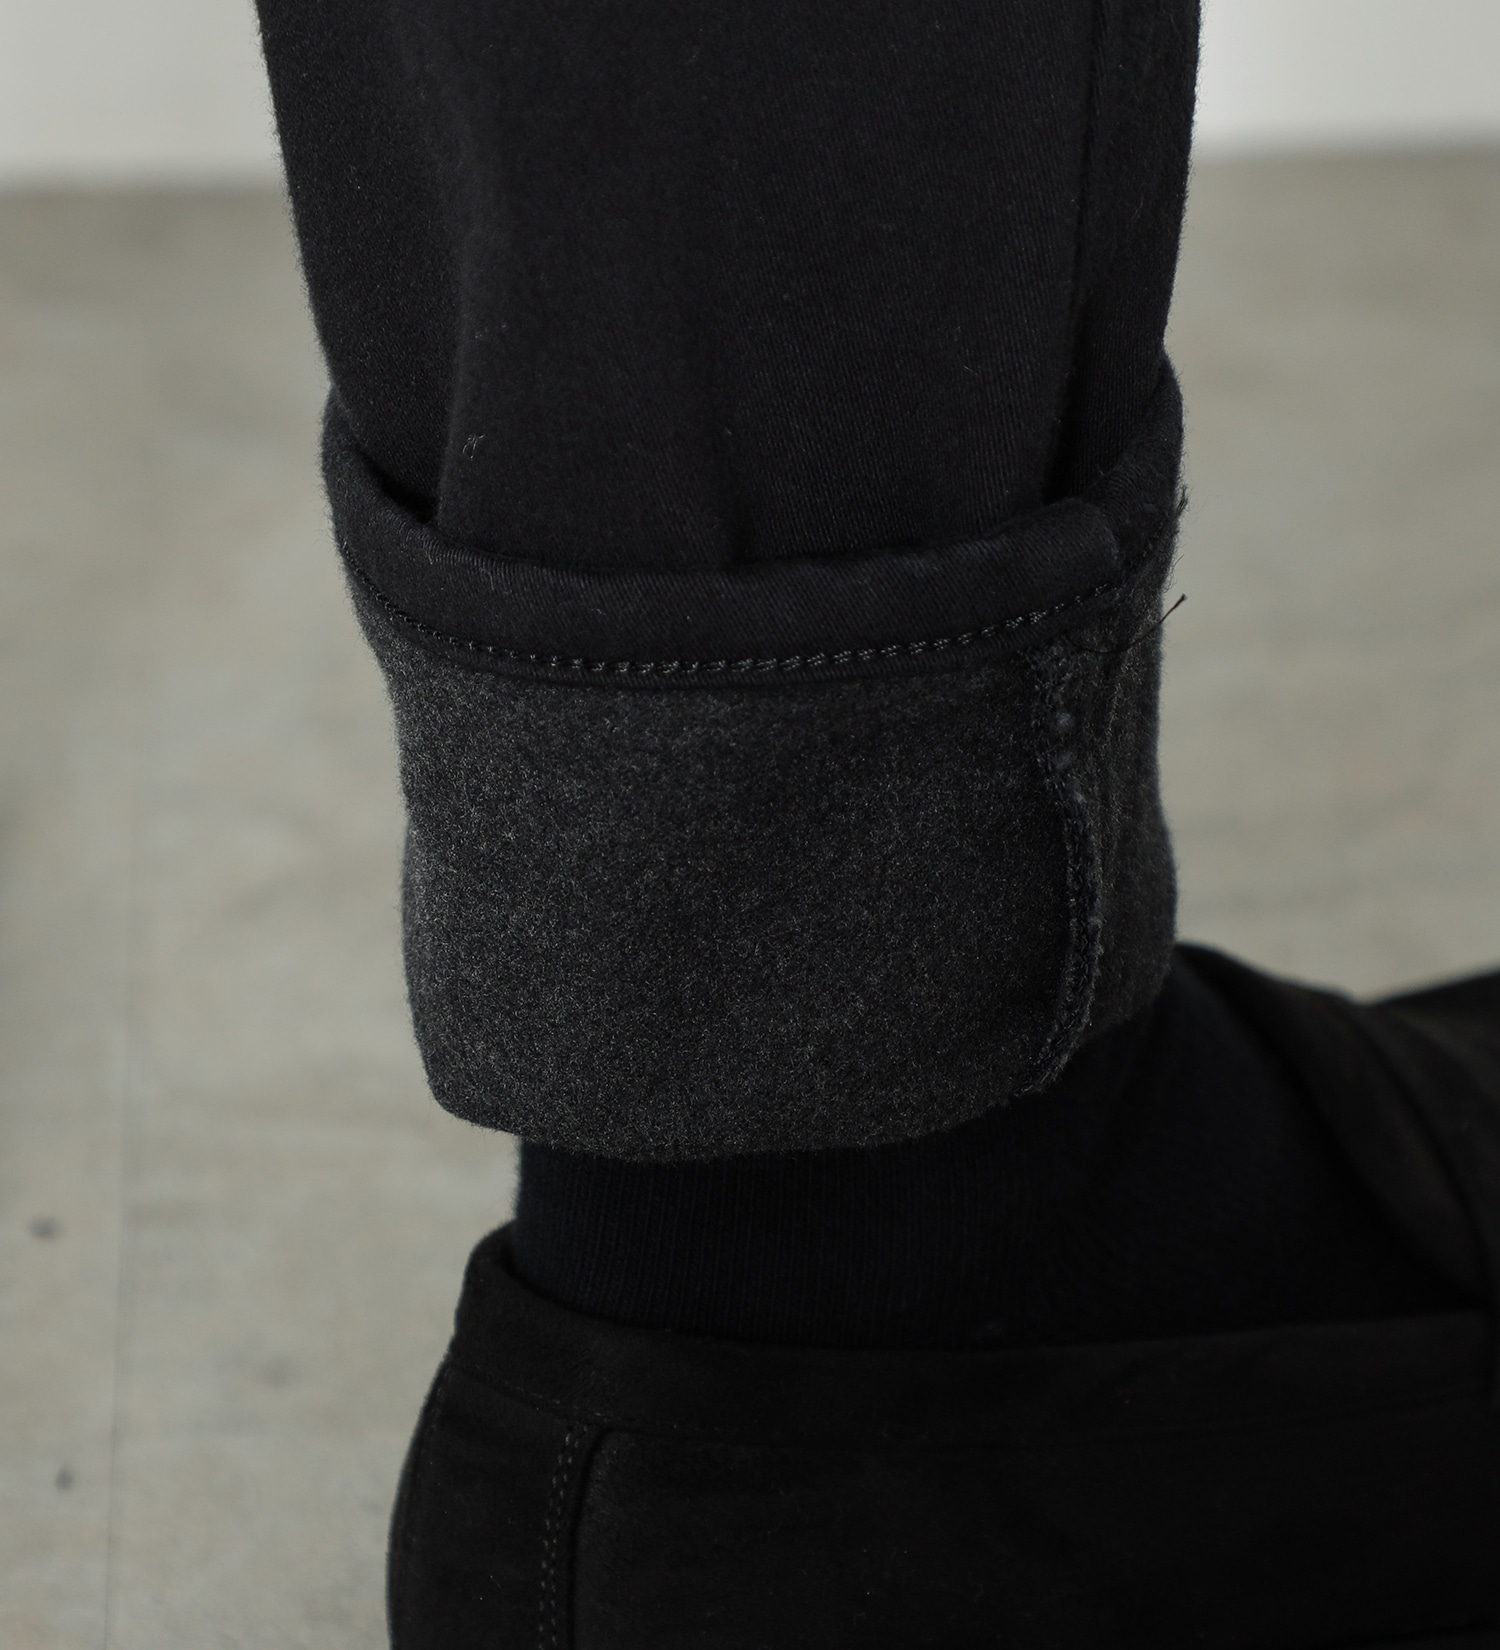 EDWIN(エドウイン)の【SALE】403 WARM FLEX スラッシュポケット ストレート[暖](カラー)|パンツ/パンツ/メンズ|ブラック